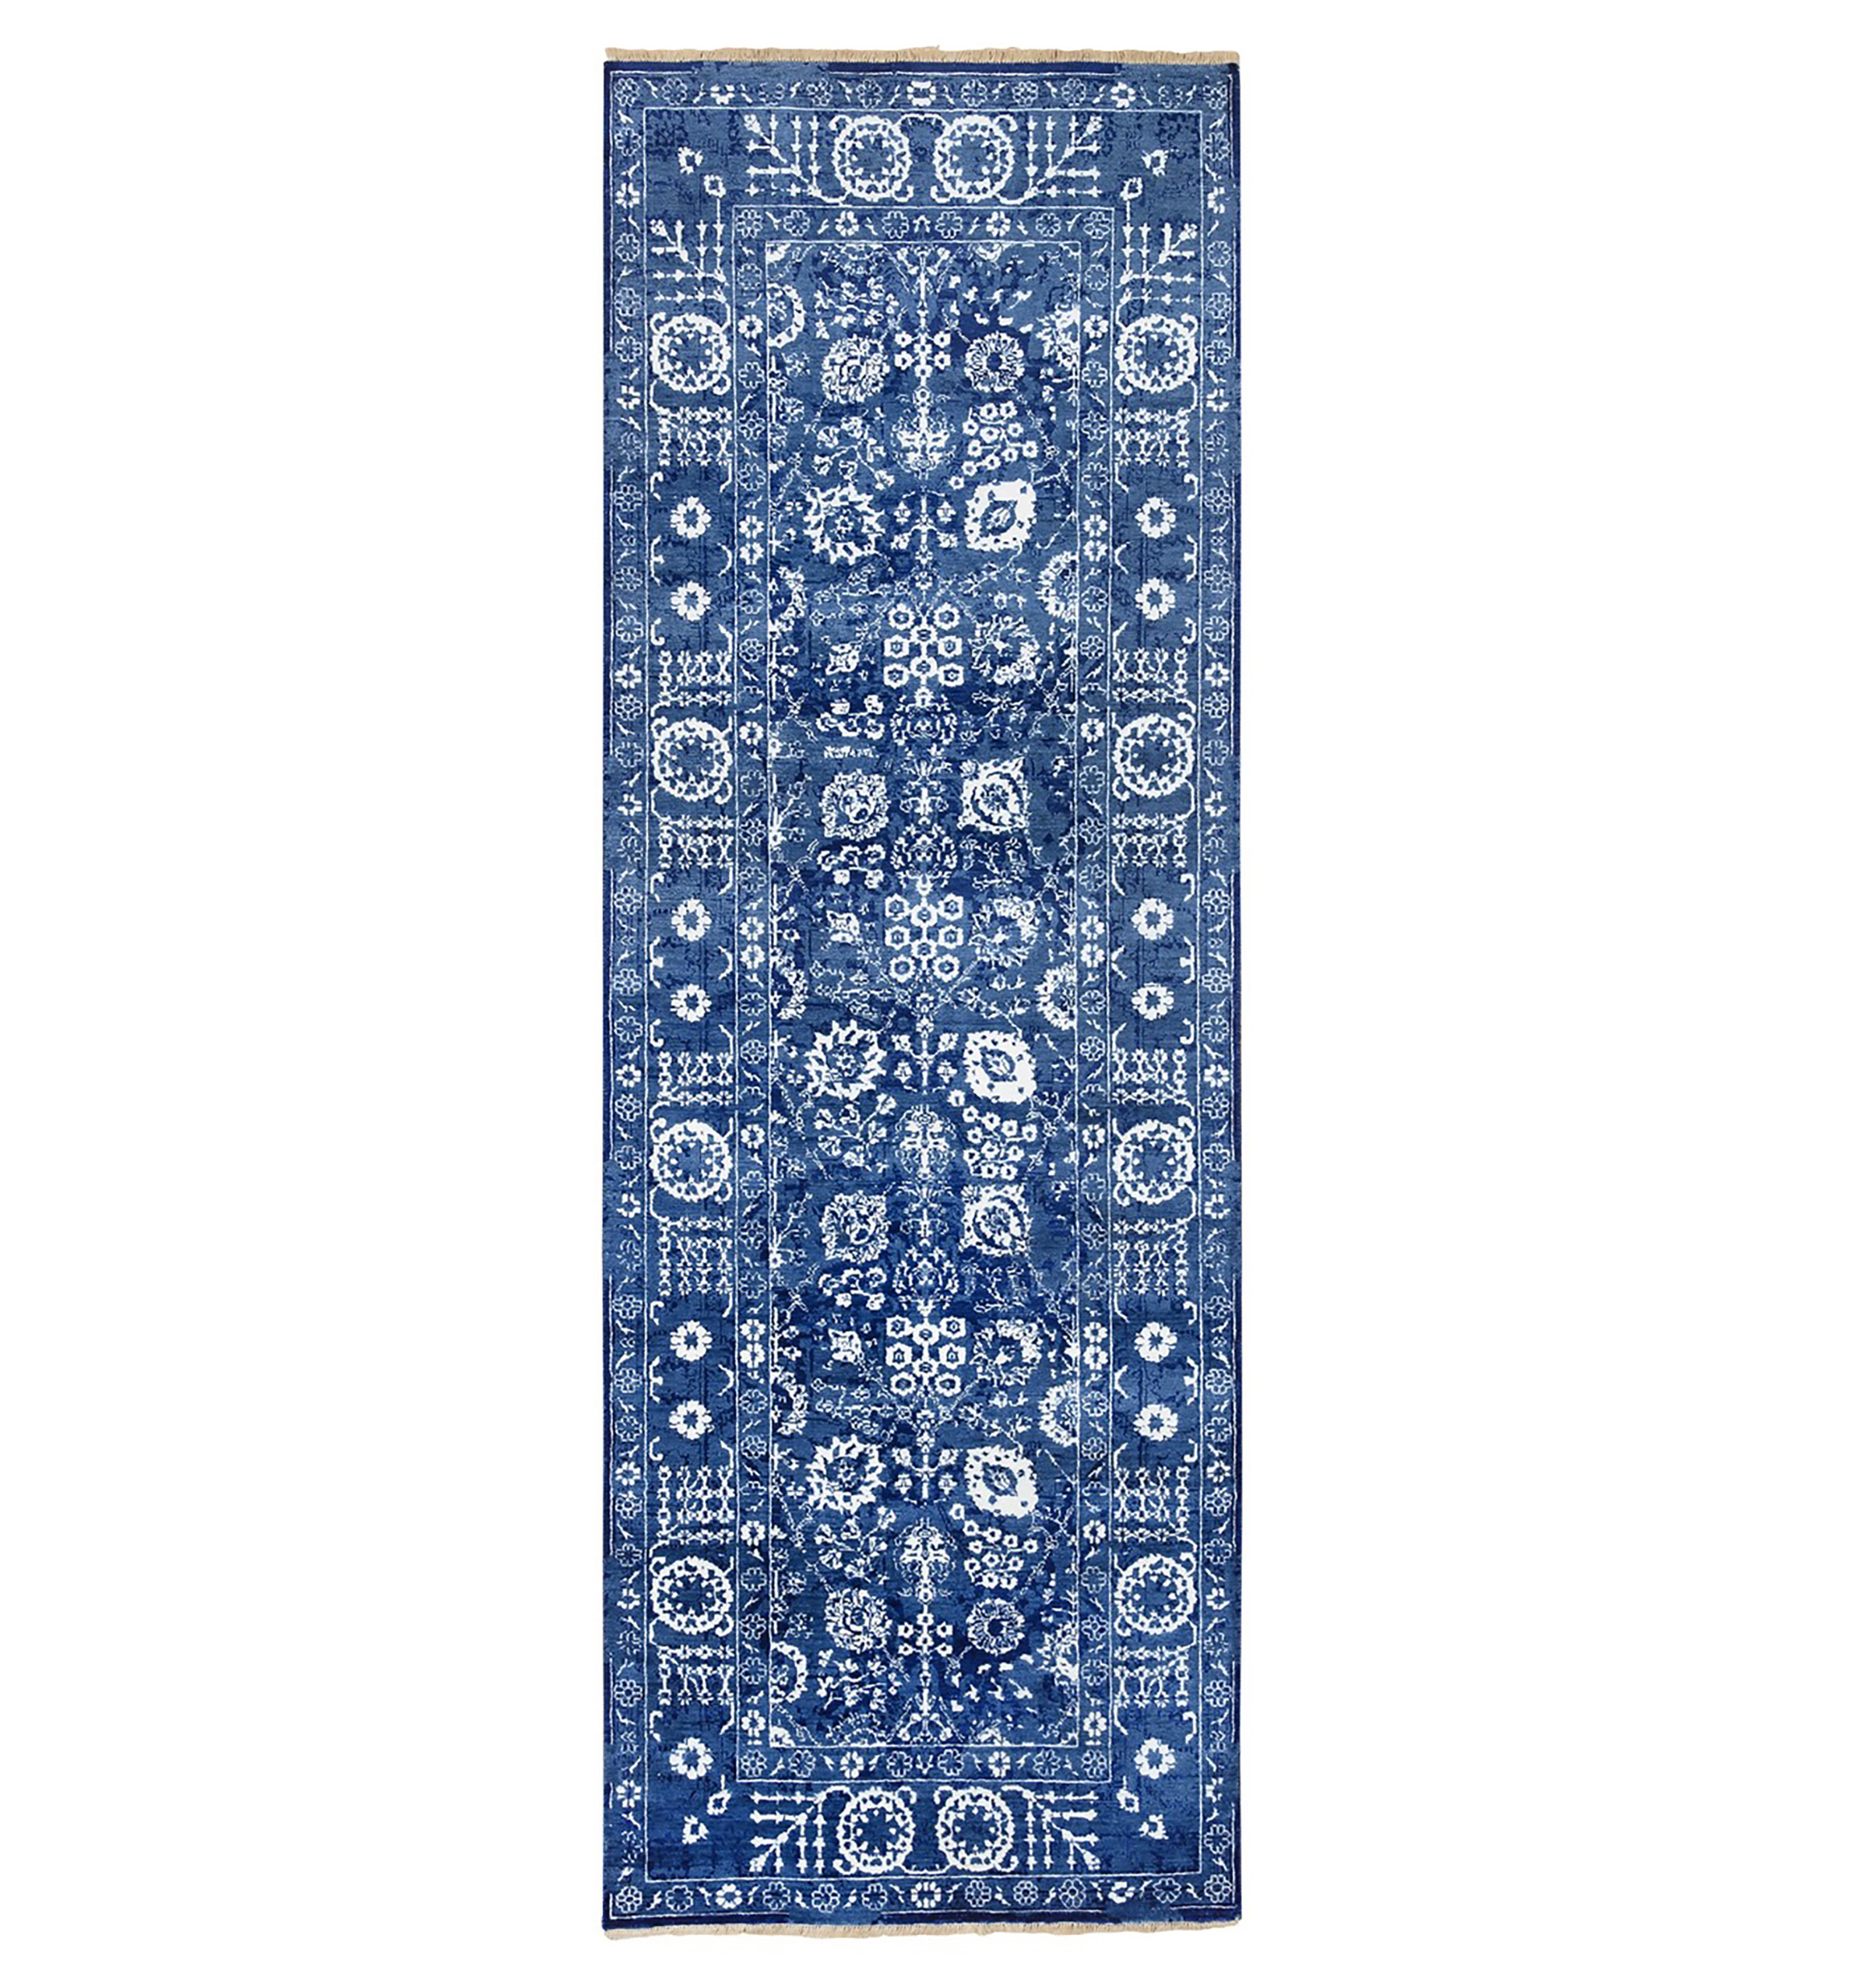 162-4700 Denim Blue Silk Tabriz runner rug A